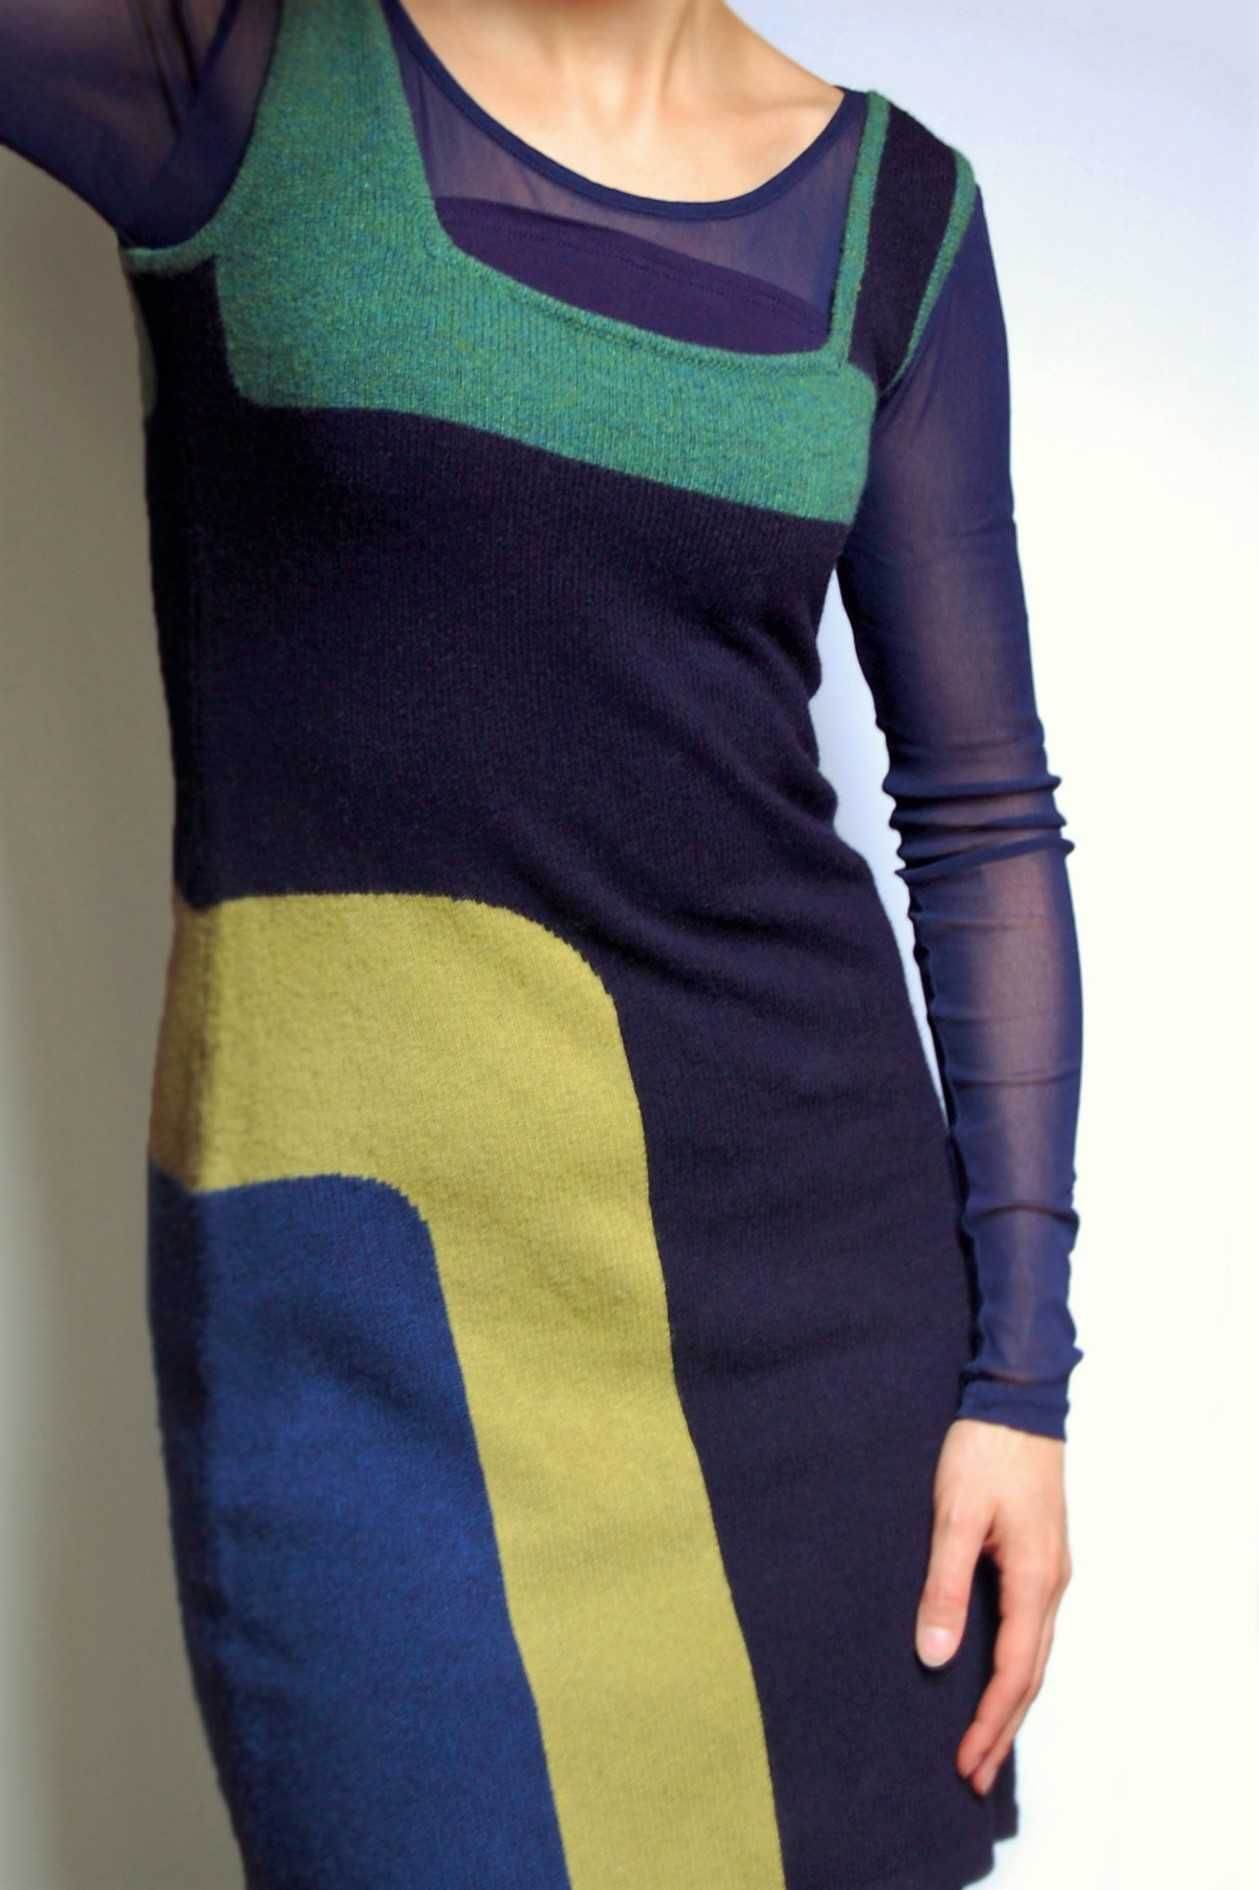 Solar sukienka/tunika 34 (XS), wełna, design, geometryczny